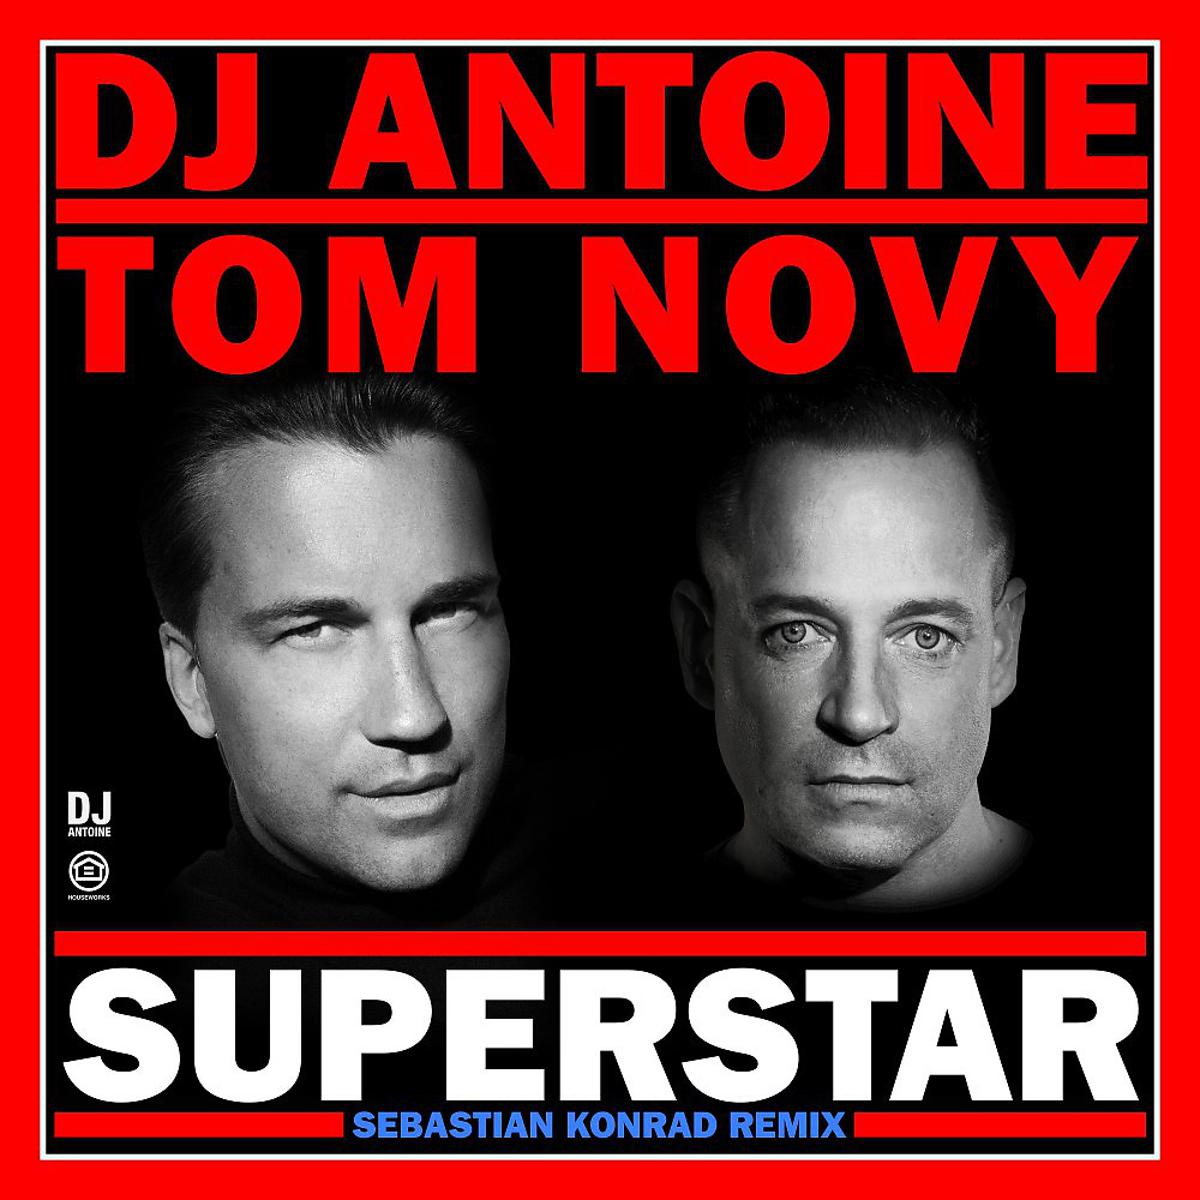 Tom novy. DJ Antoine, Tom novy vs Mad Mark - Superstar (2k20 Mix). DJ Antoine Superstar (DJ Antoine vs Mad Mark 2k20 Mix). DJ Antoine & Tom novy - Superstar. La vie en Rose (vs. Mad Mark 2k17 Mix) DJ Antoine.